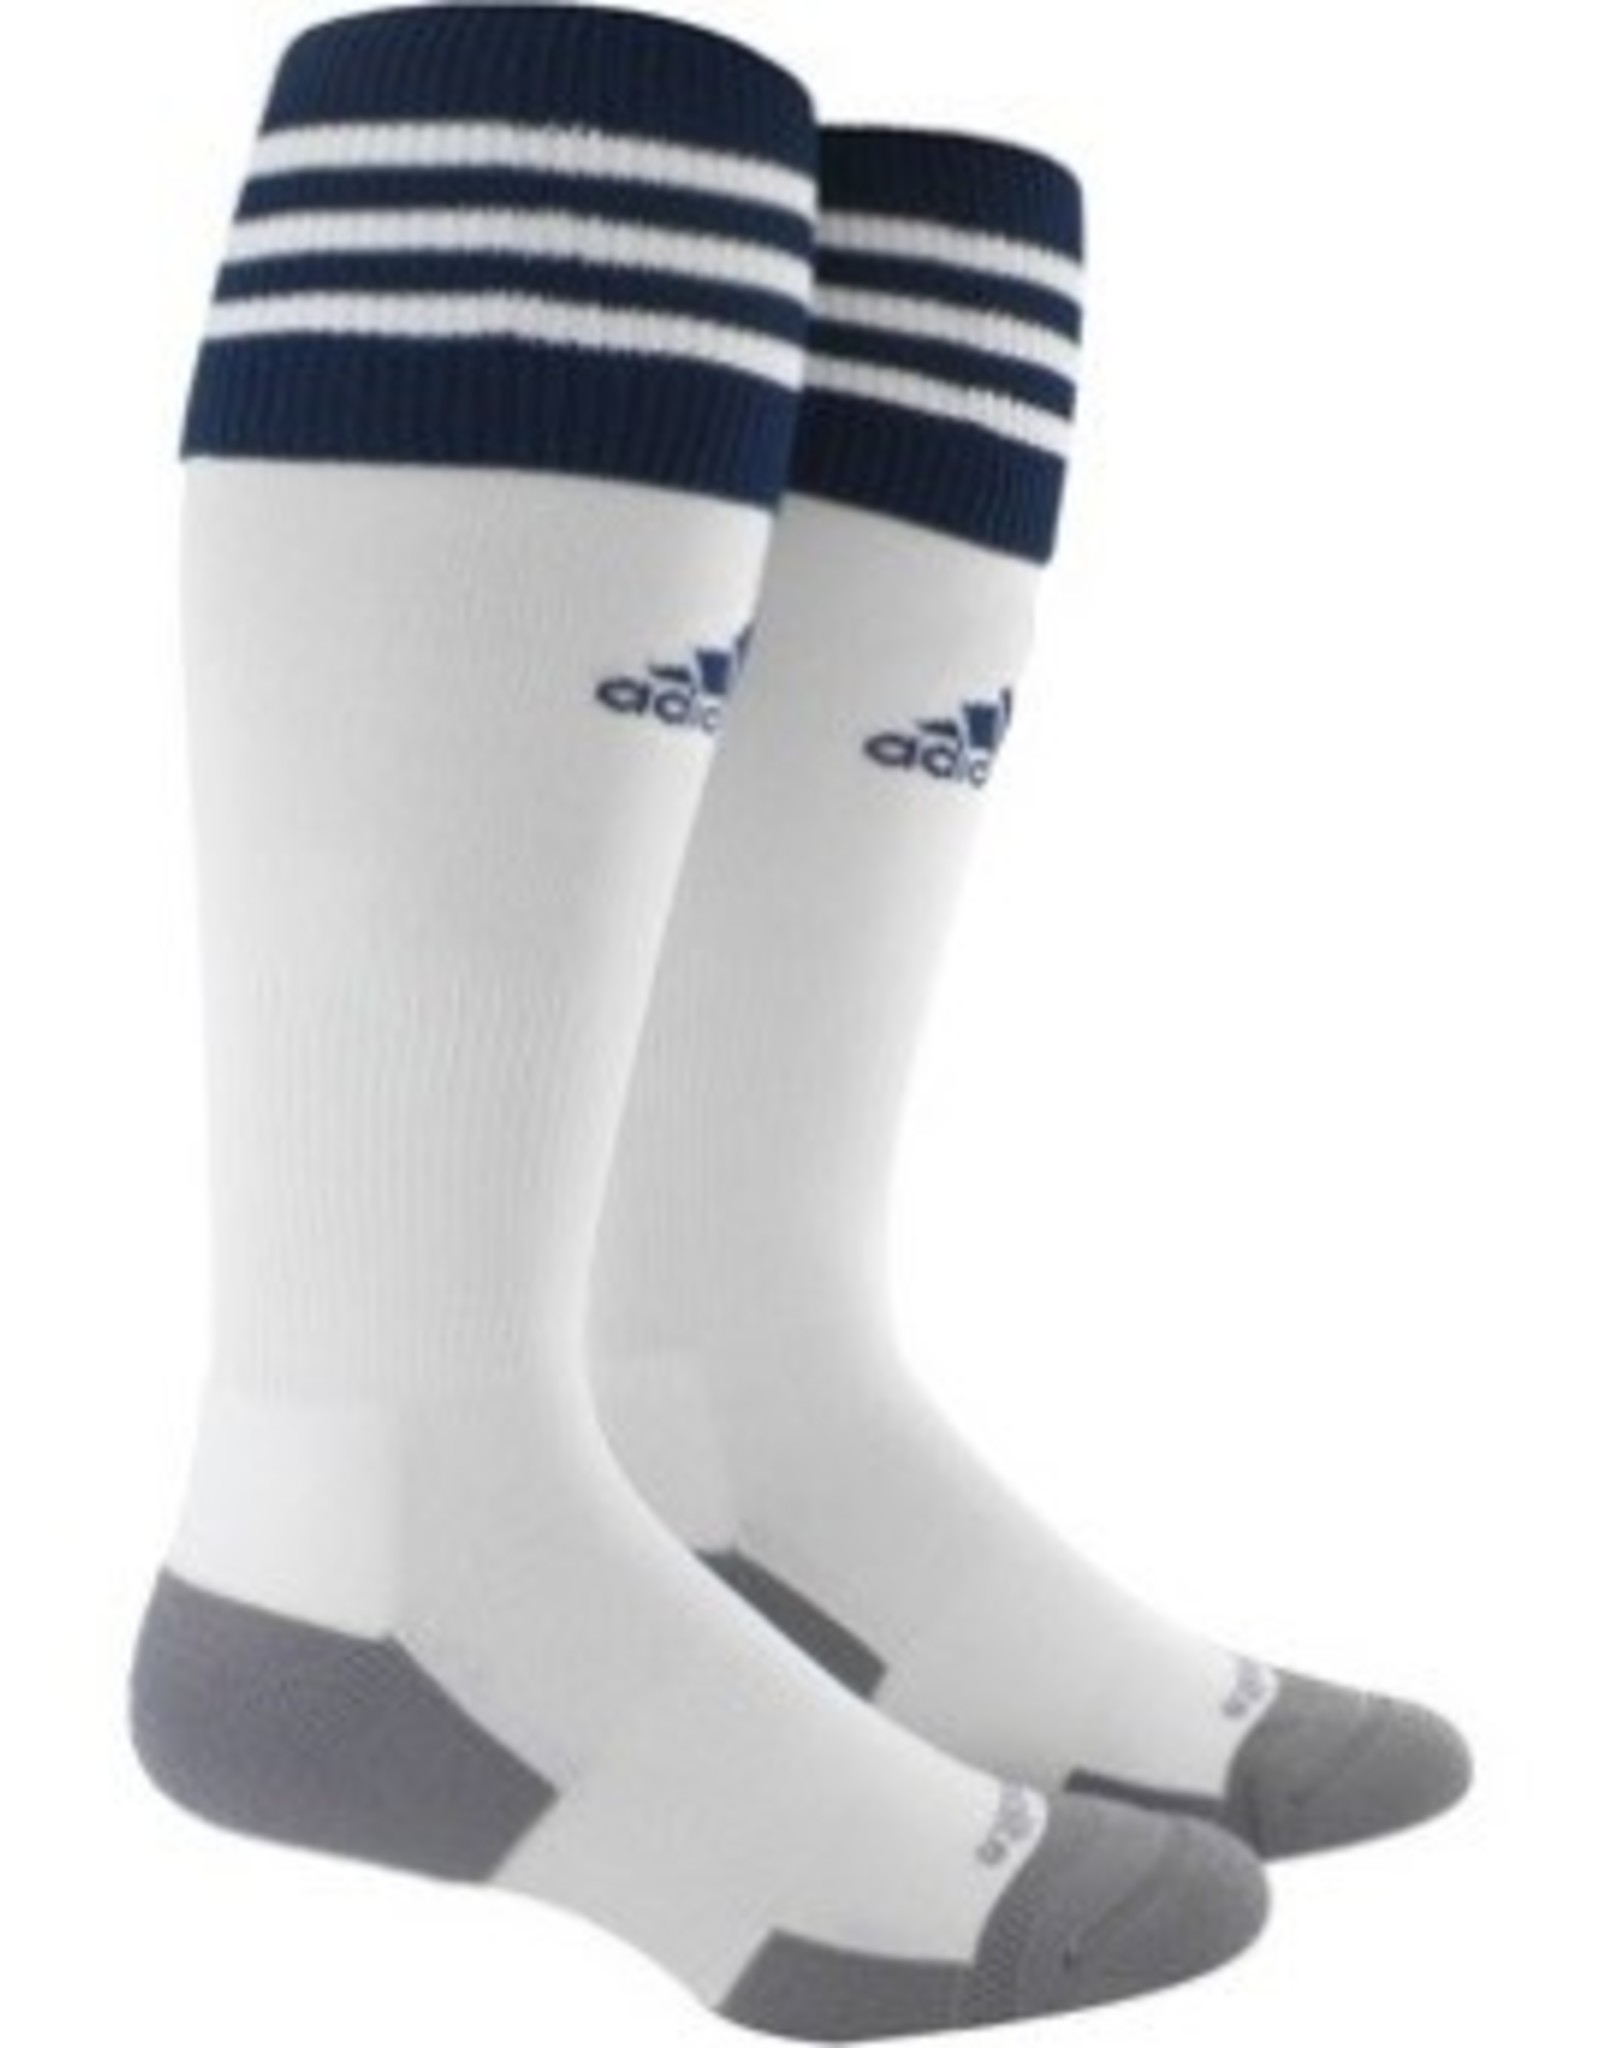 Adidas Adidas Copa Zone 11 Socks White w/Navy 7-8.5 size